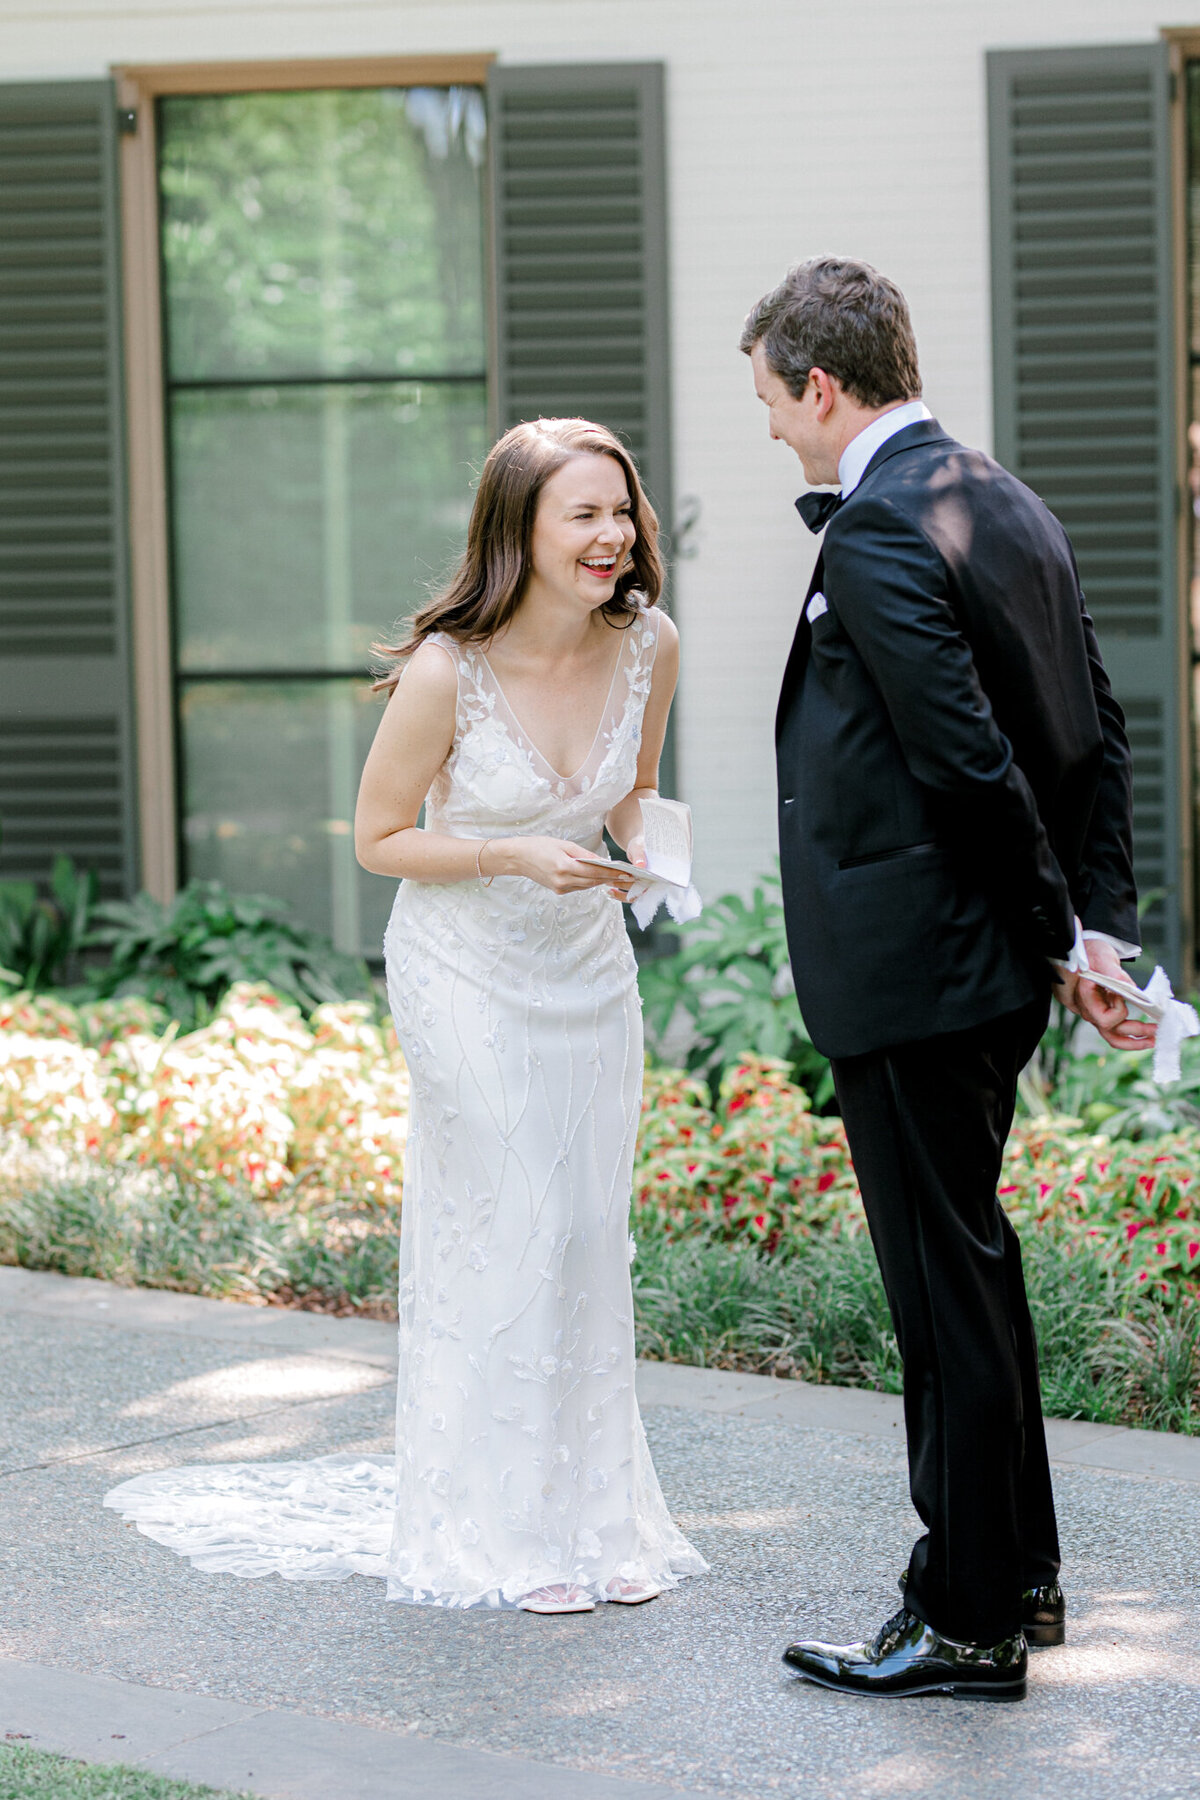 Gena & Matt's Wedding at the Dallas Arboretum | Dallas Wedding Photographer | Sami Kathryn Photography-71